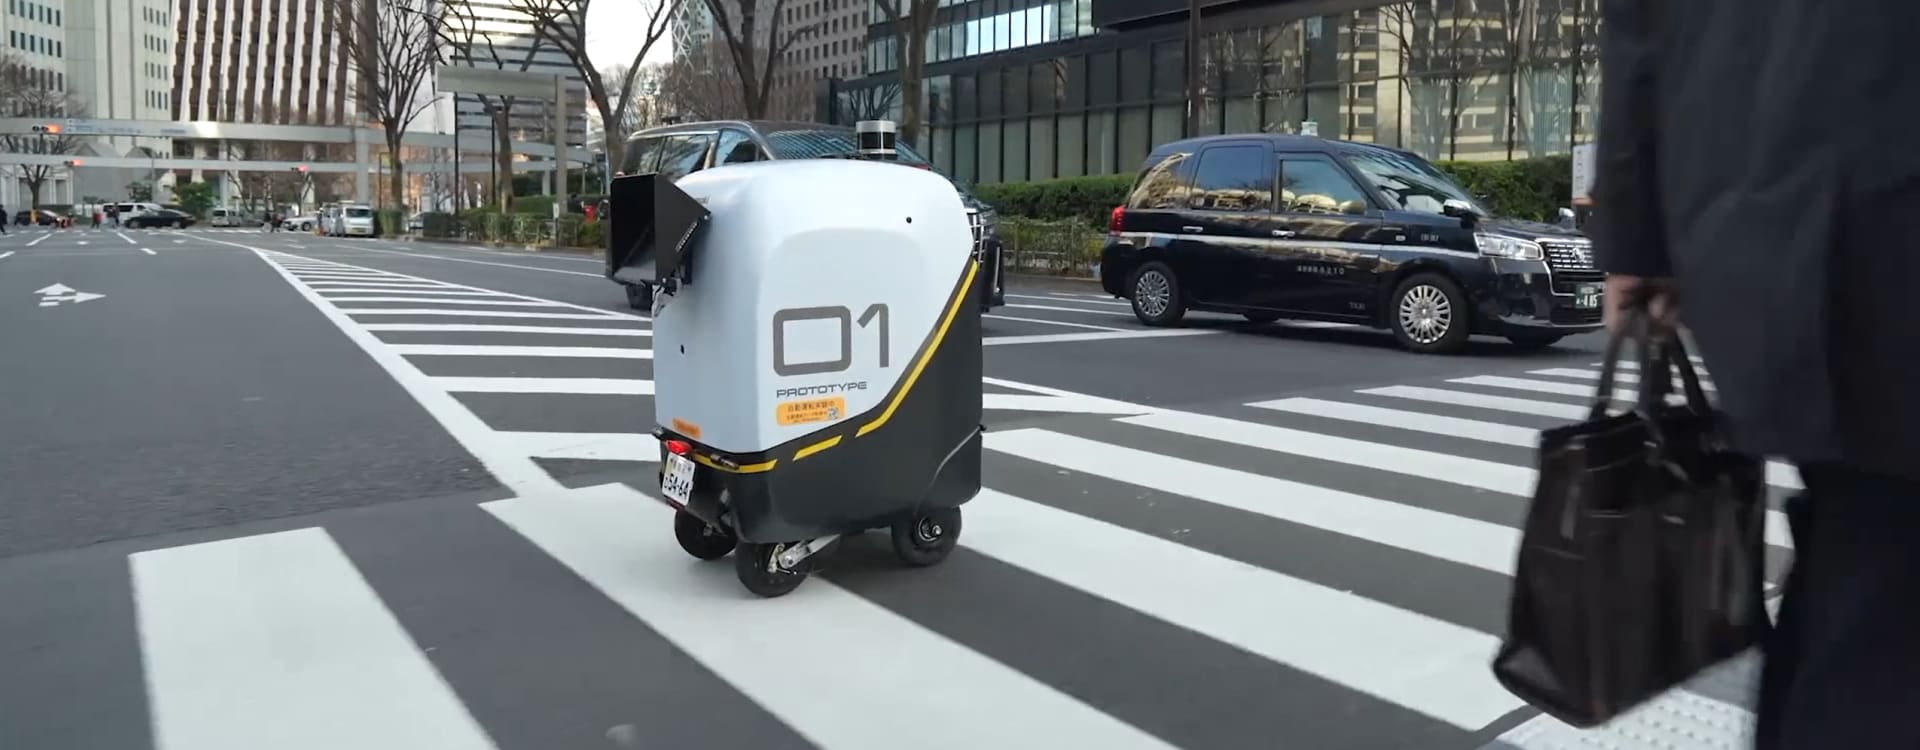 ドローン、配送ロボット、デジタルアプリで、日本の患者さんに輝かしい未来を